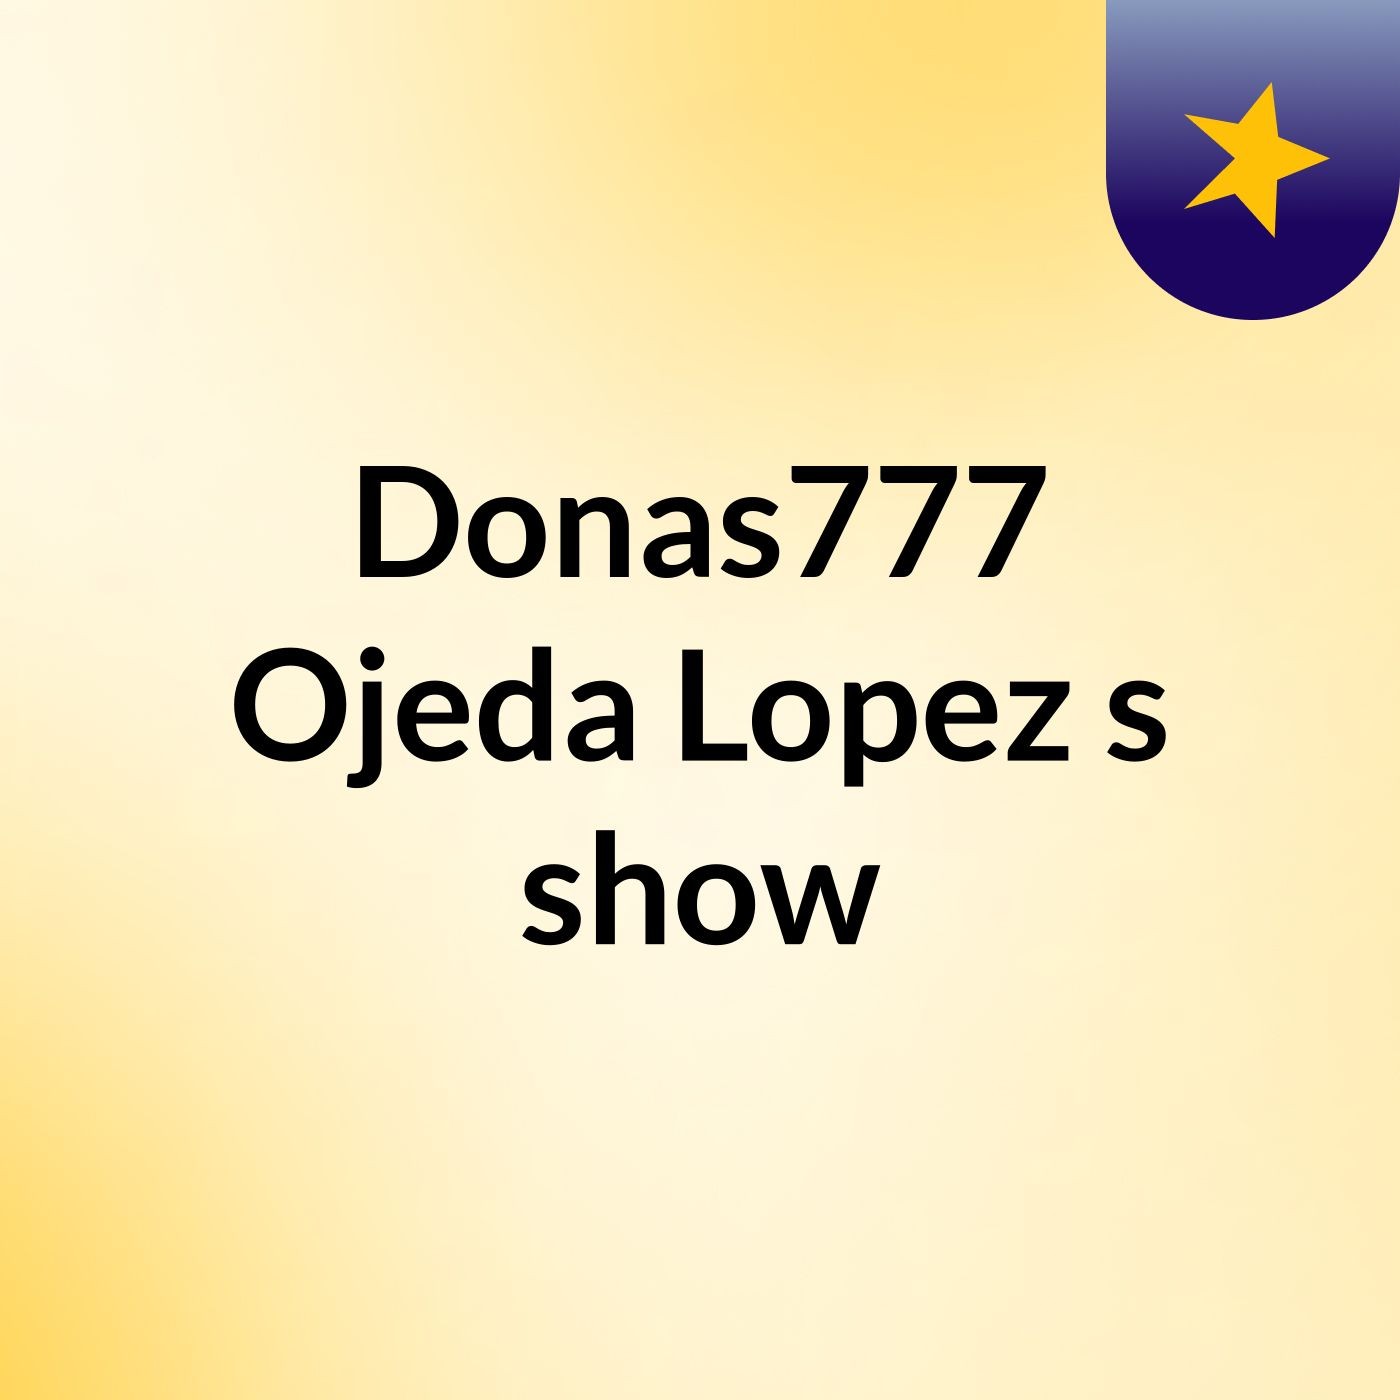 Donas777 Ojeda Lopez's show